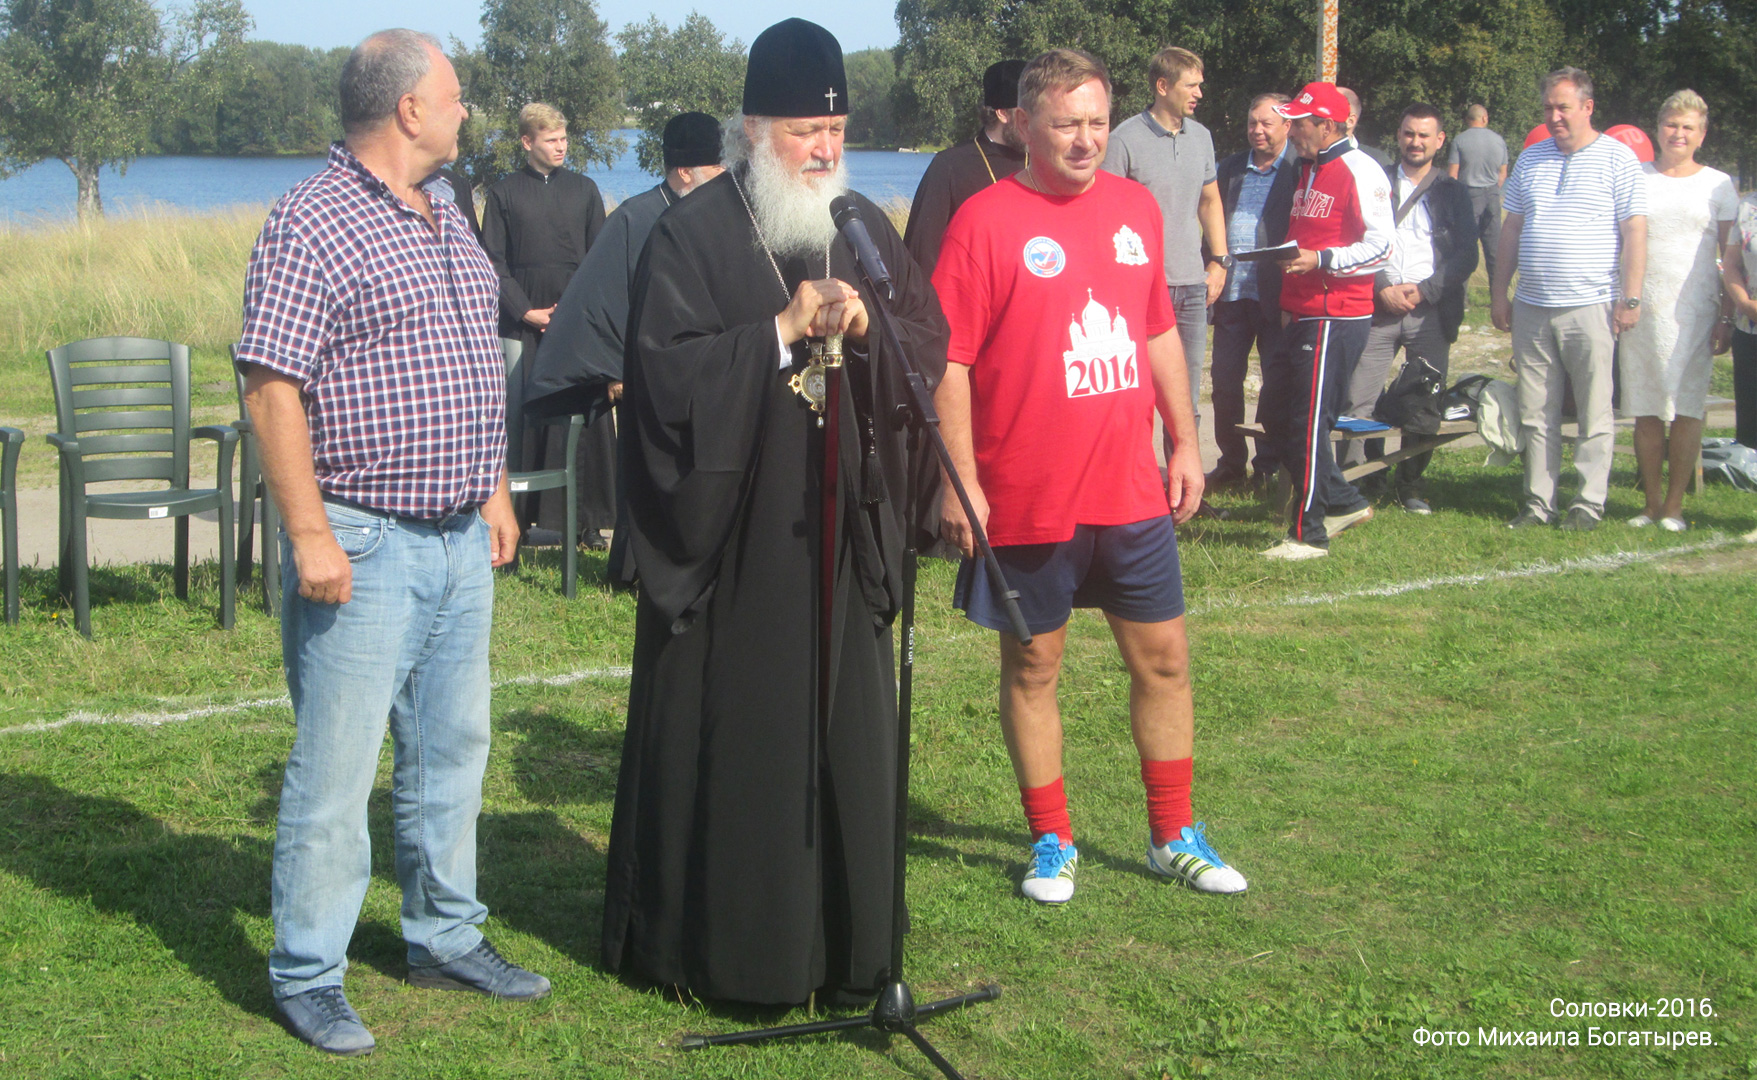 Патриарх Кирилл на Соловках в 2016 году. Фото М.Богатырева